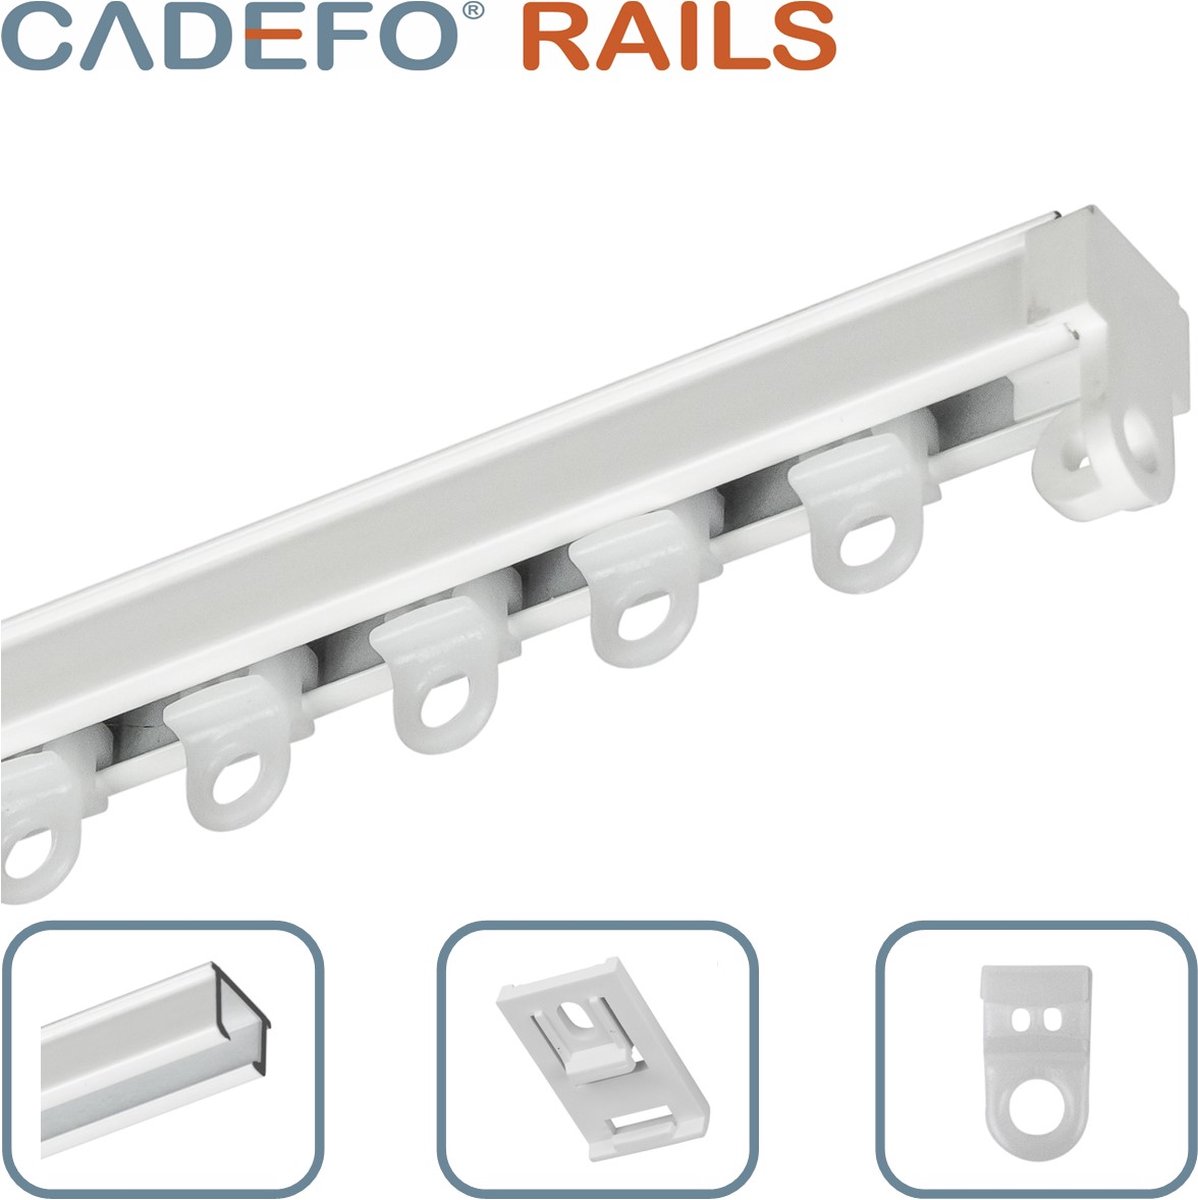 CADEFO RAILS (551 - 600 cm) Gordijnrails - Compleet op maat! - UIT 1 STUK - Leverbaar tot 6 meter - Plafondbevestiging - Lengte 581 cm